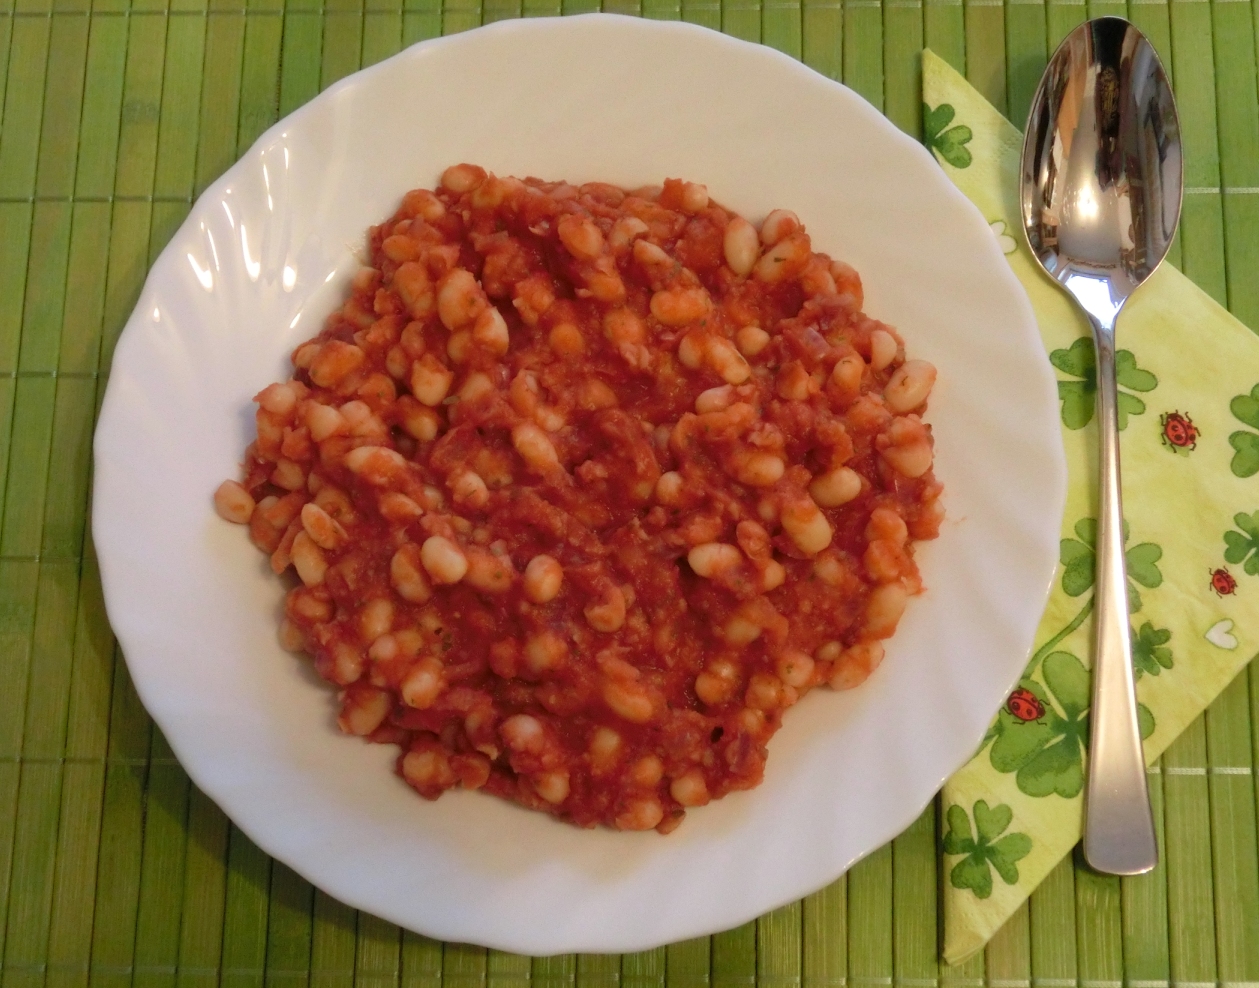 Baked Beans Weiße Bohnen Aufstrich — Rezepte Suchen